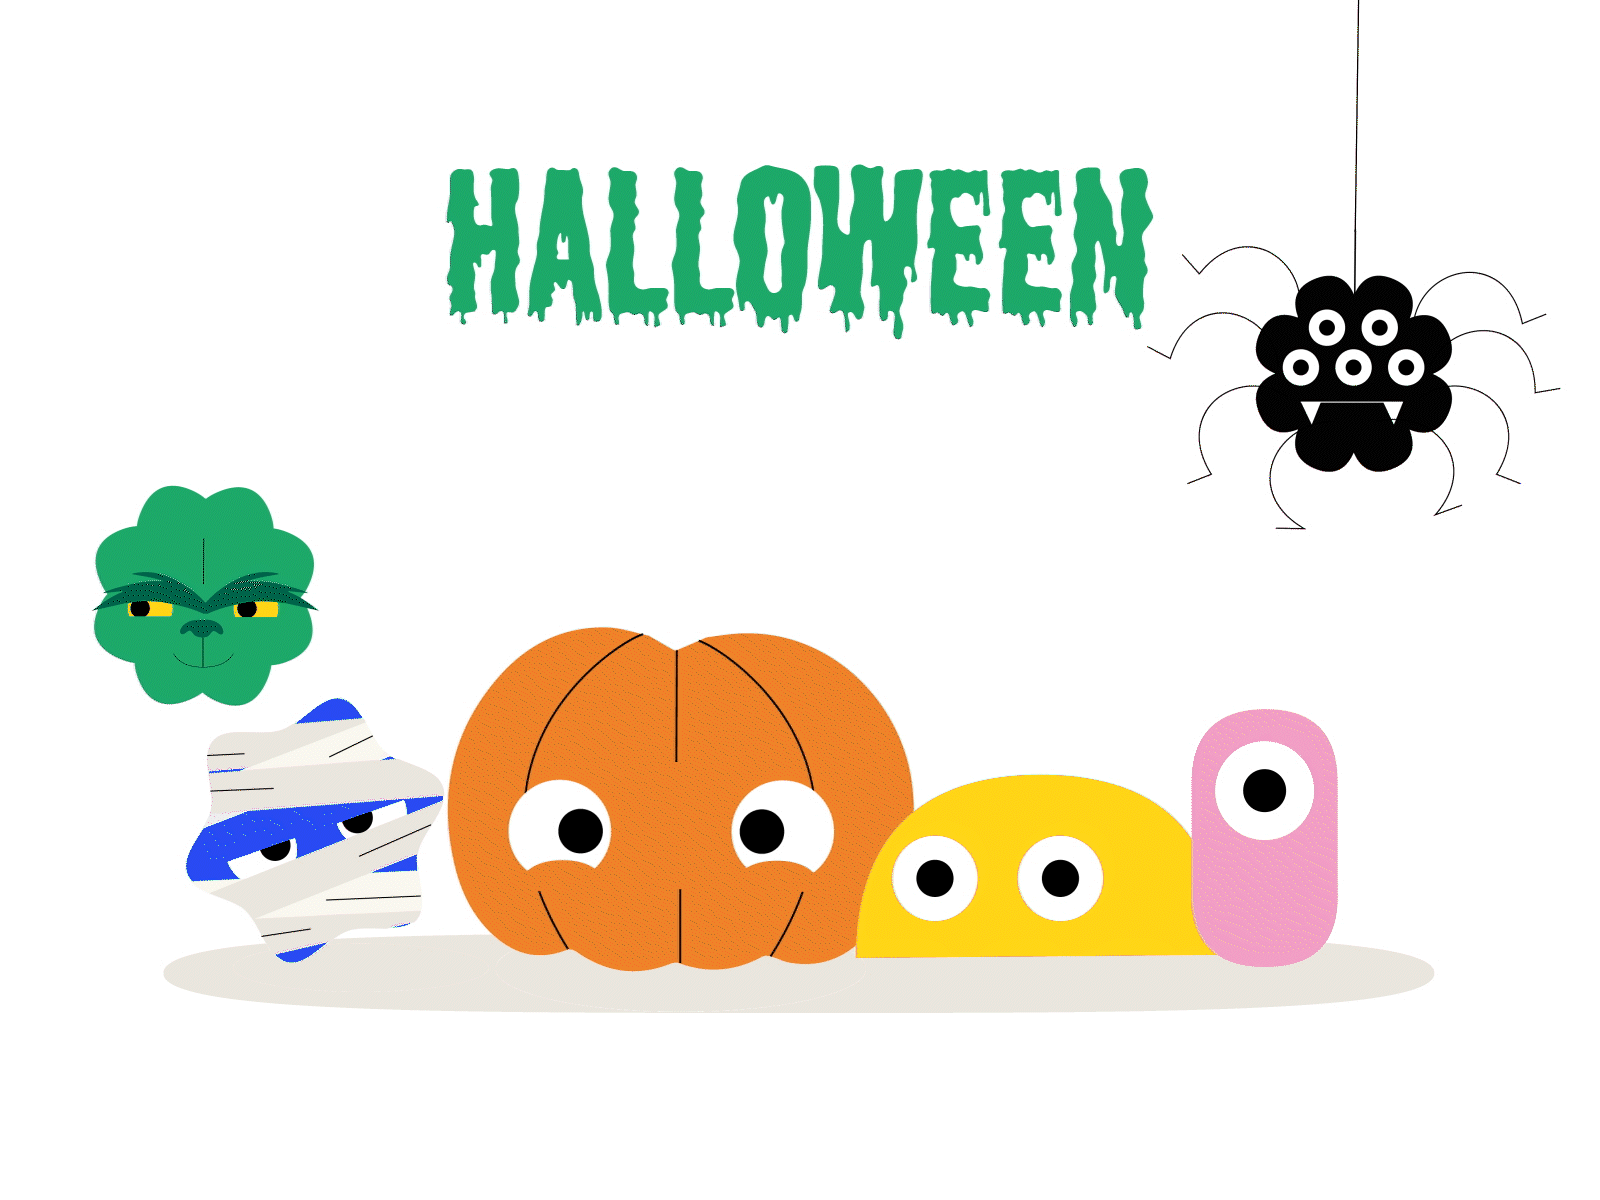 Halloween monsters